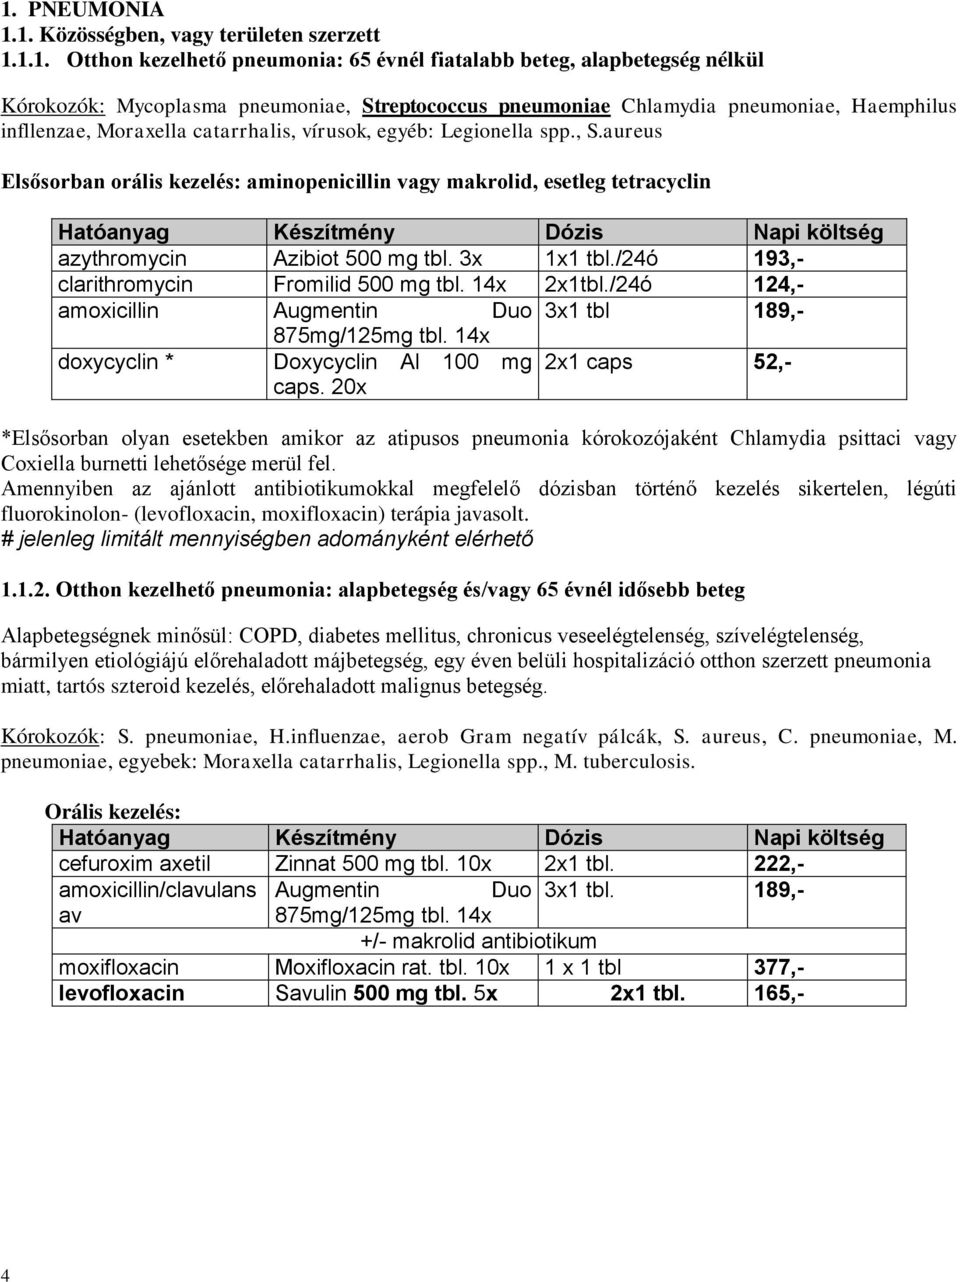 aureus Elsősorban orális kezelés: aminopenicillin makrolid, esetleg tetracyclin azythromycin Azibiot 500 mg tbl. 3x 1x1 tbl./24ó 193,- clarithromycin Fromilid 500 mg tbl. 14x 2x1tbl.